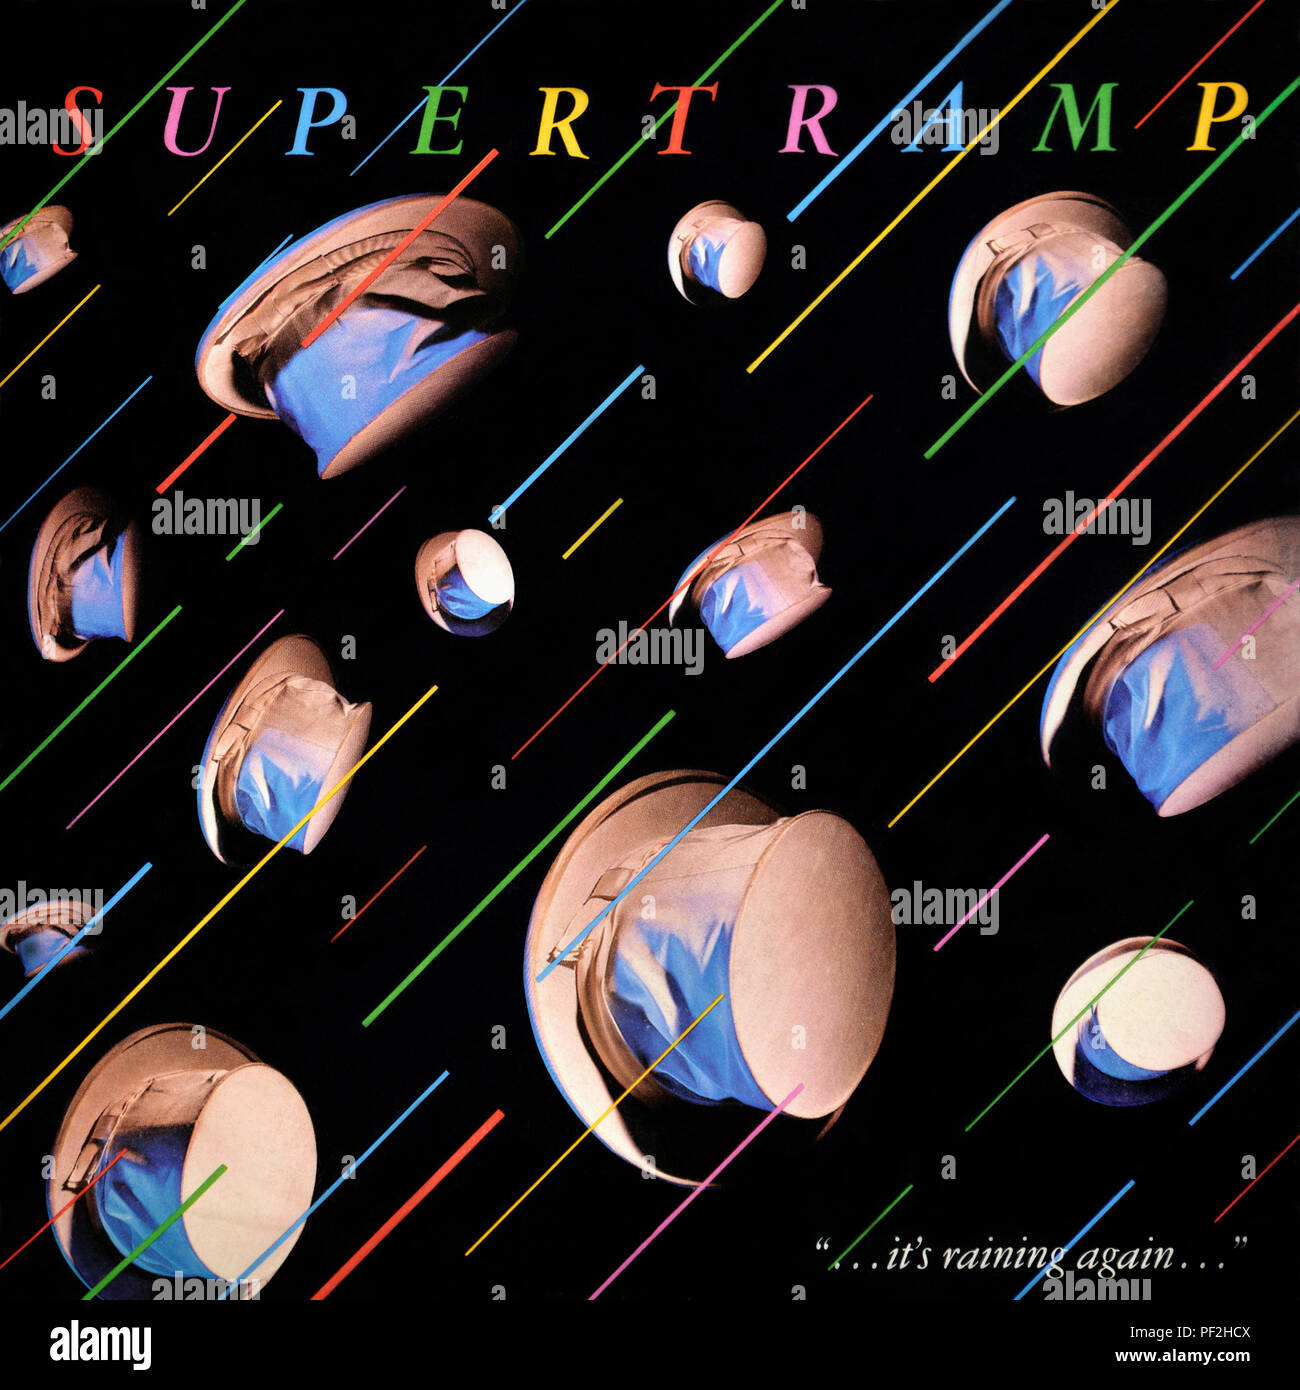 Supertramp - original vinyl album cover - It's raining Again - 1982 Stock Photo